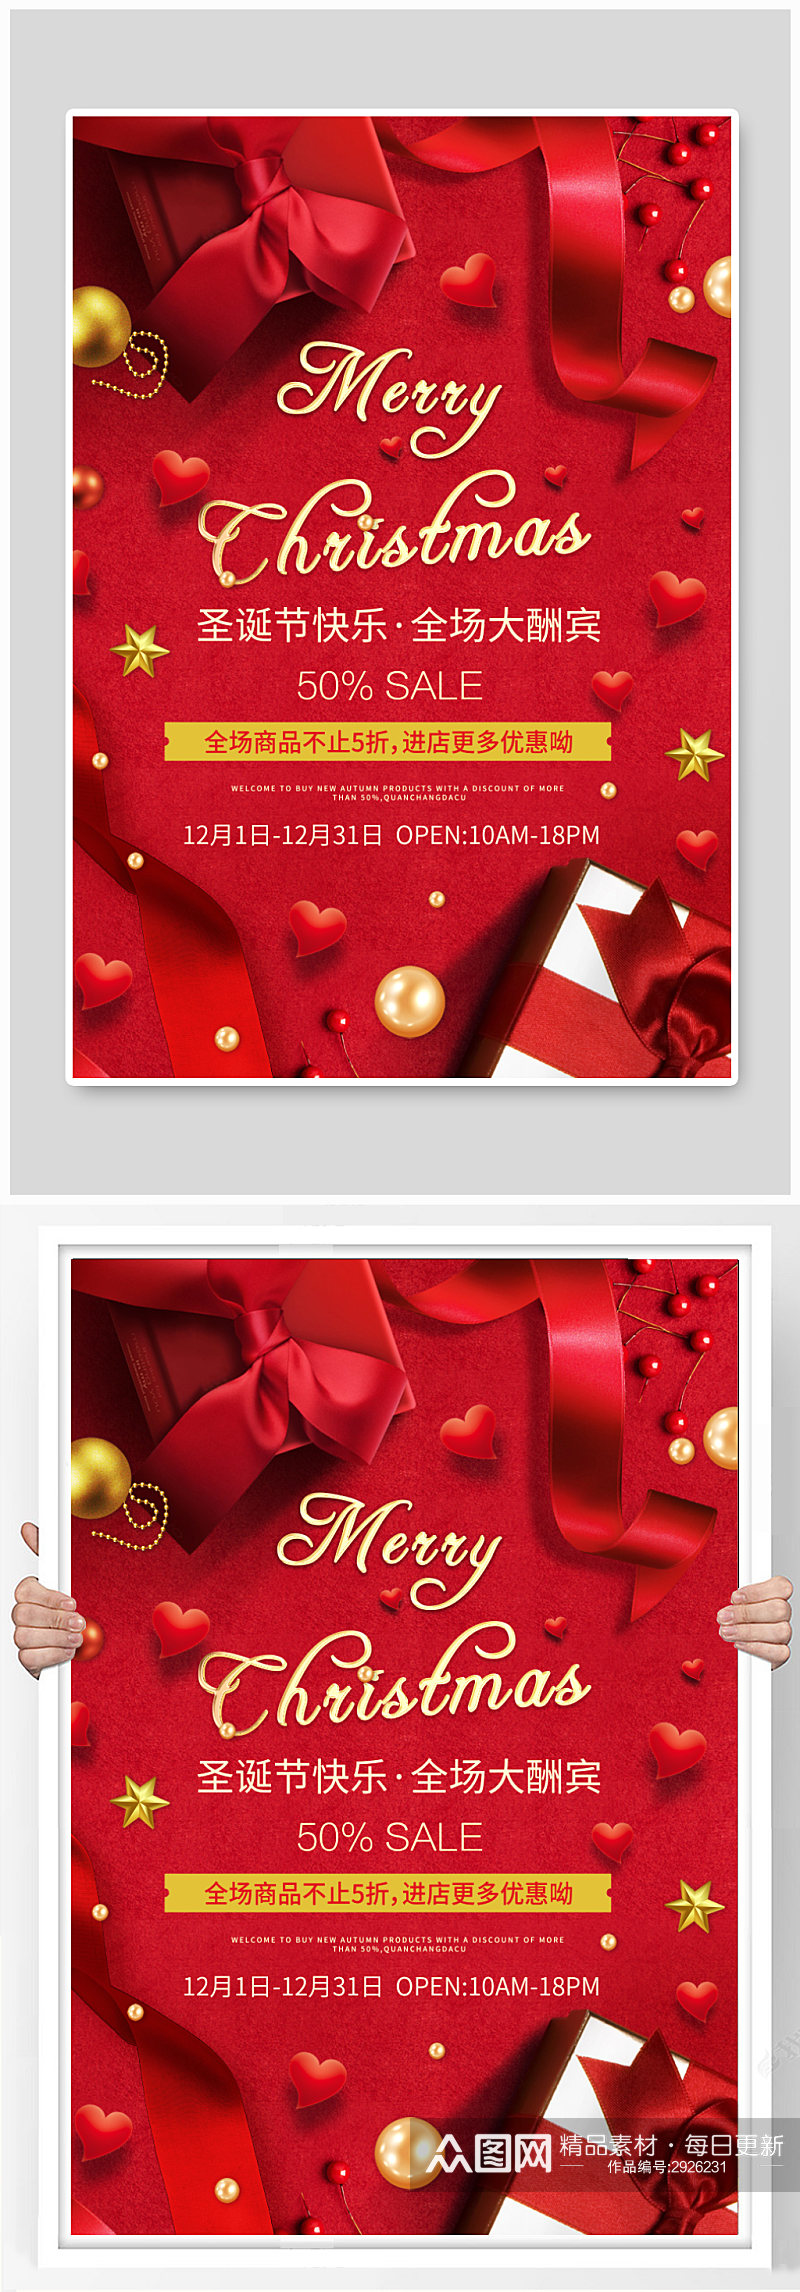 红色礼盒场景圣诞节促销海报素材